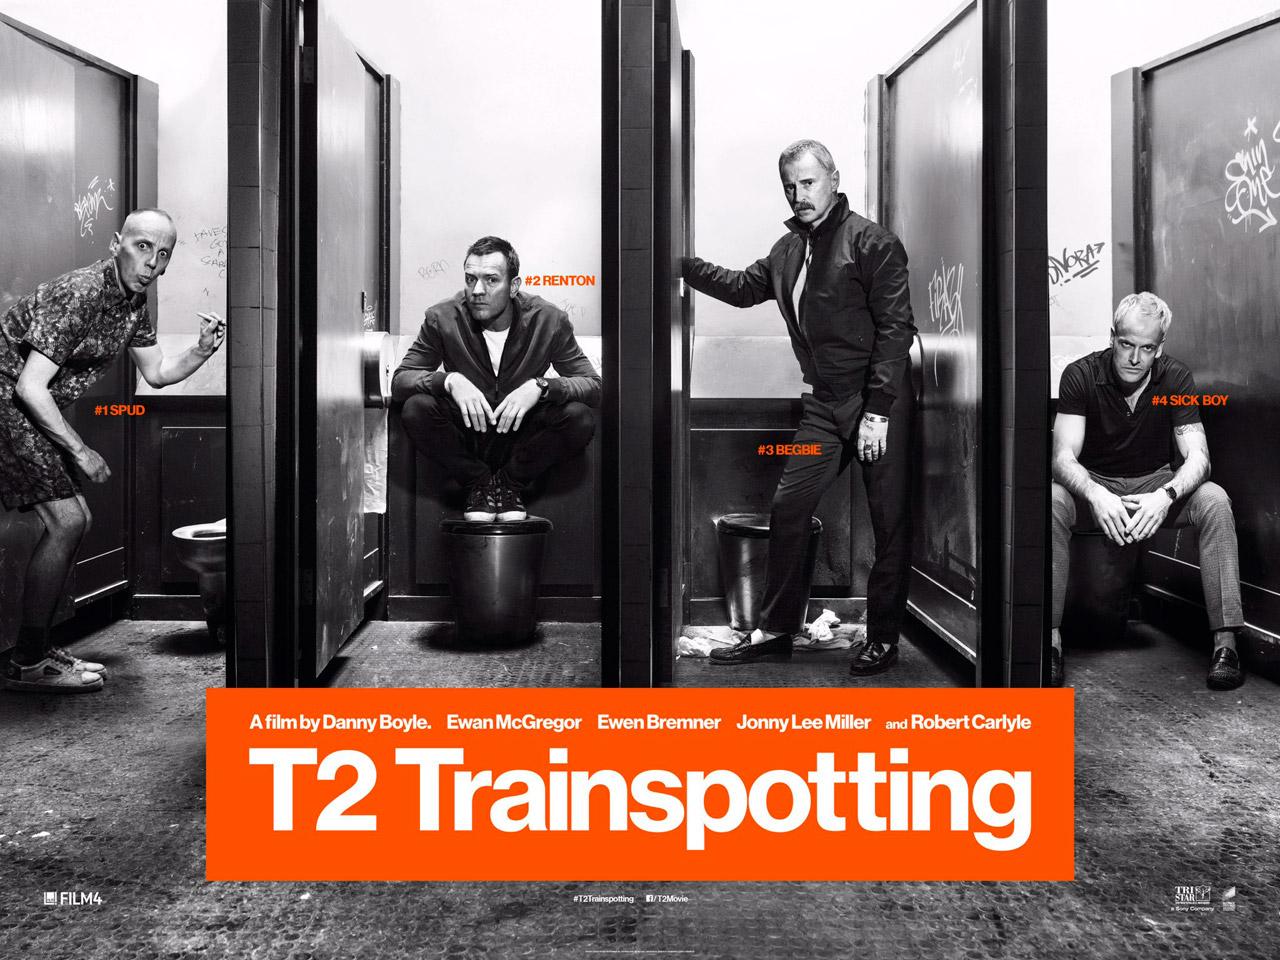 بوستر فيلم T2 Trainspotting